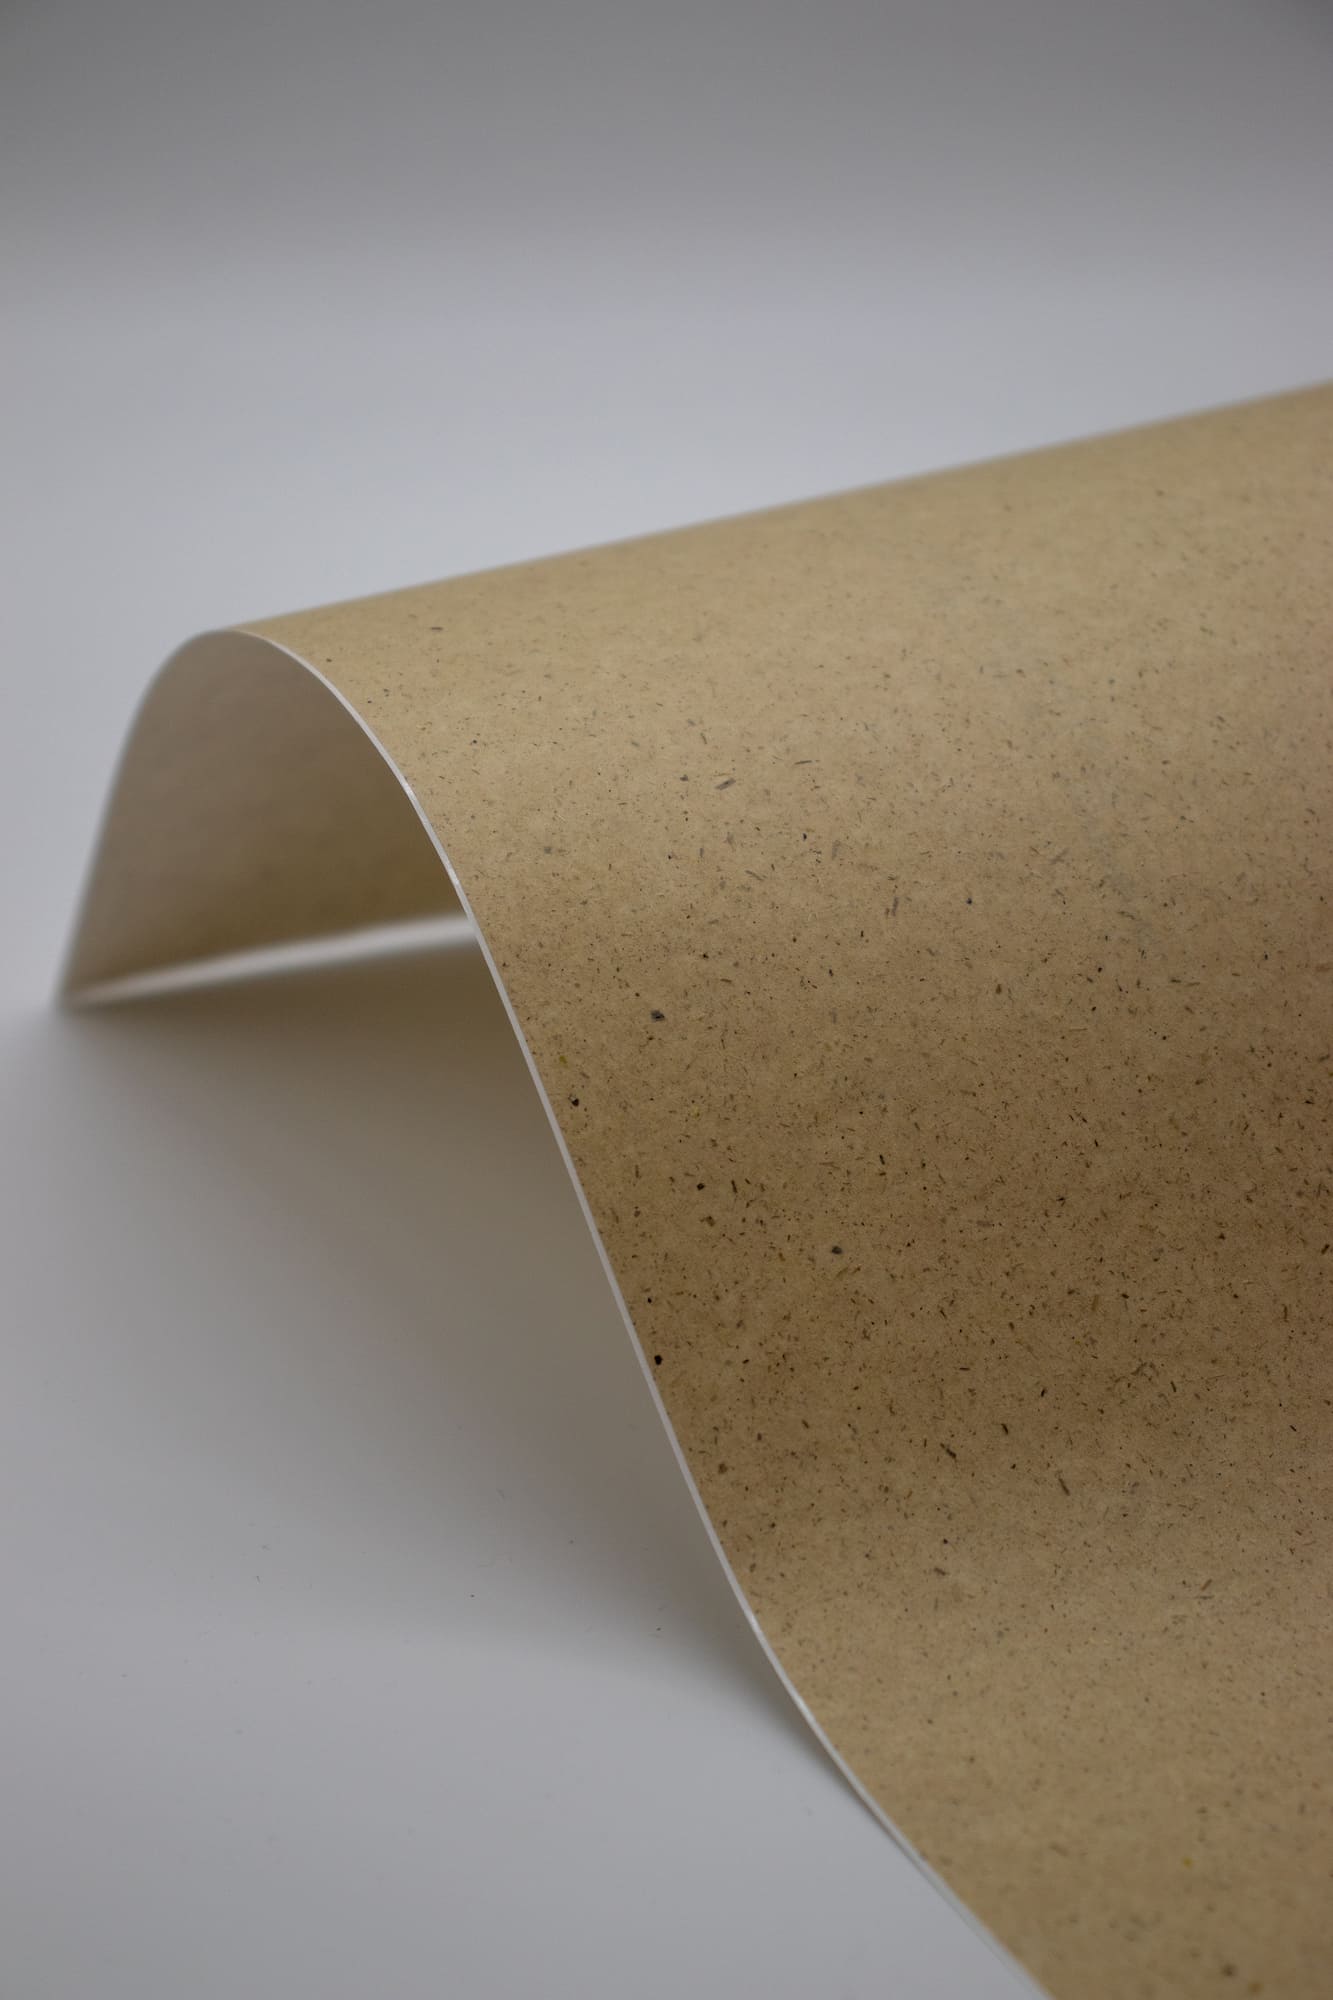 ENDI-HAFT Graspapier Etiketten, 12 mm rund auf DIN A4 Bögen